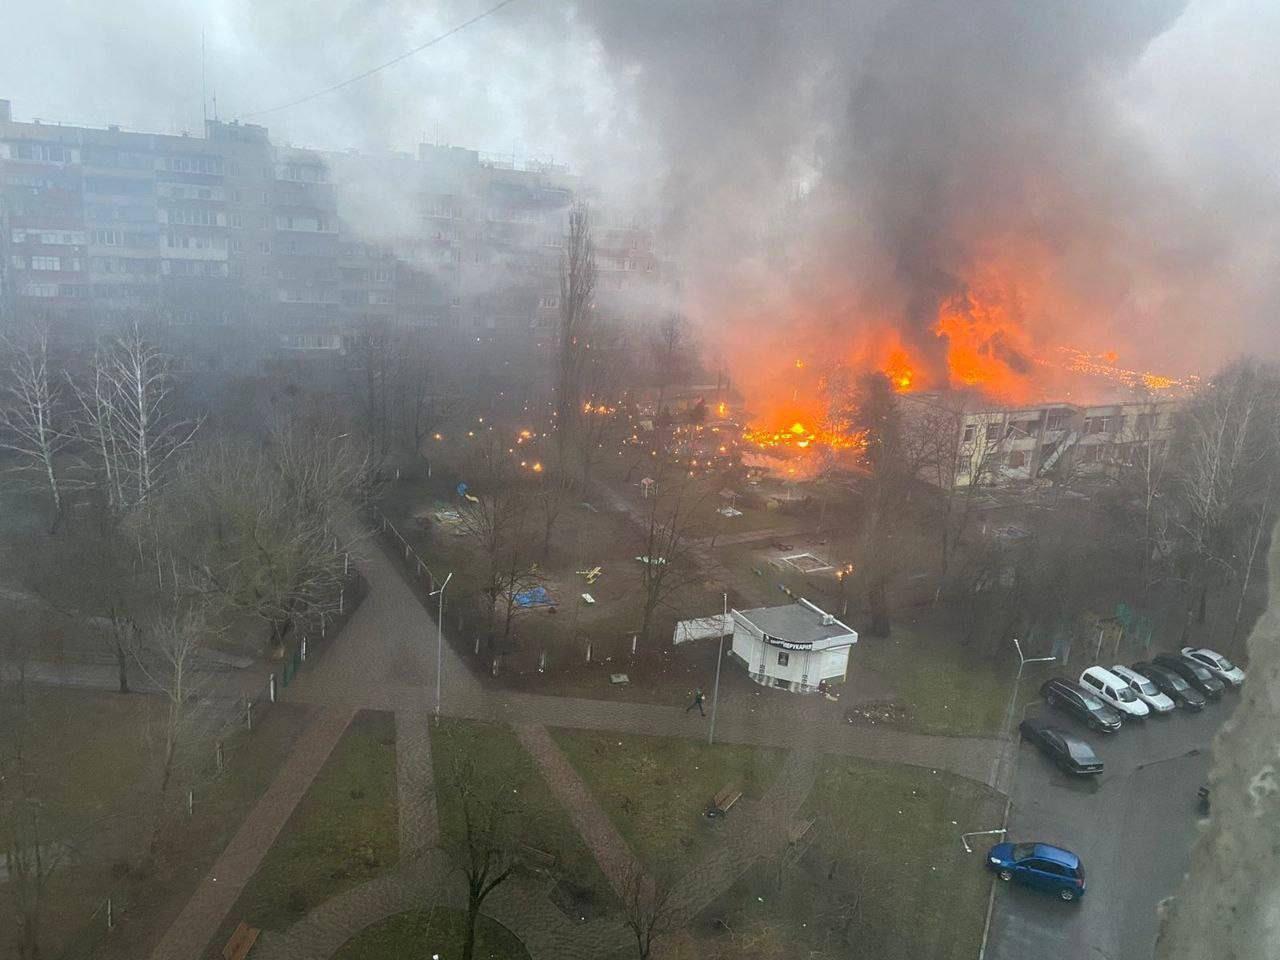 Imagen publicada en los medios ucranianos sobre la zona donde ha ocurrido el accidente, que ha provocado un incendio